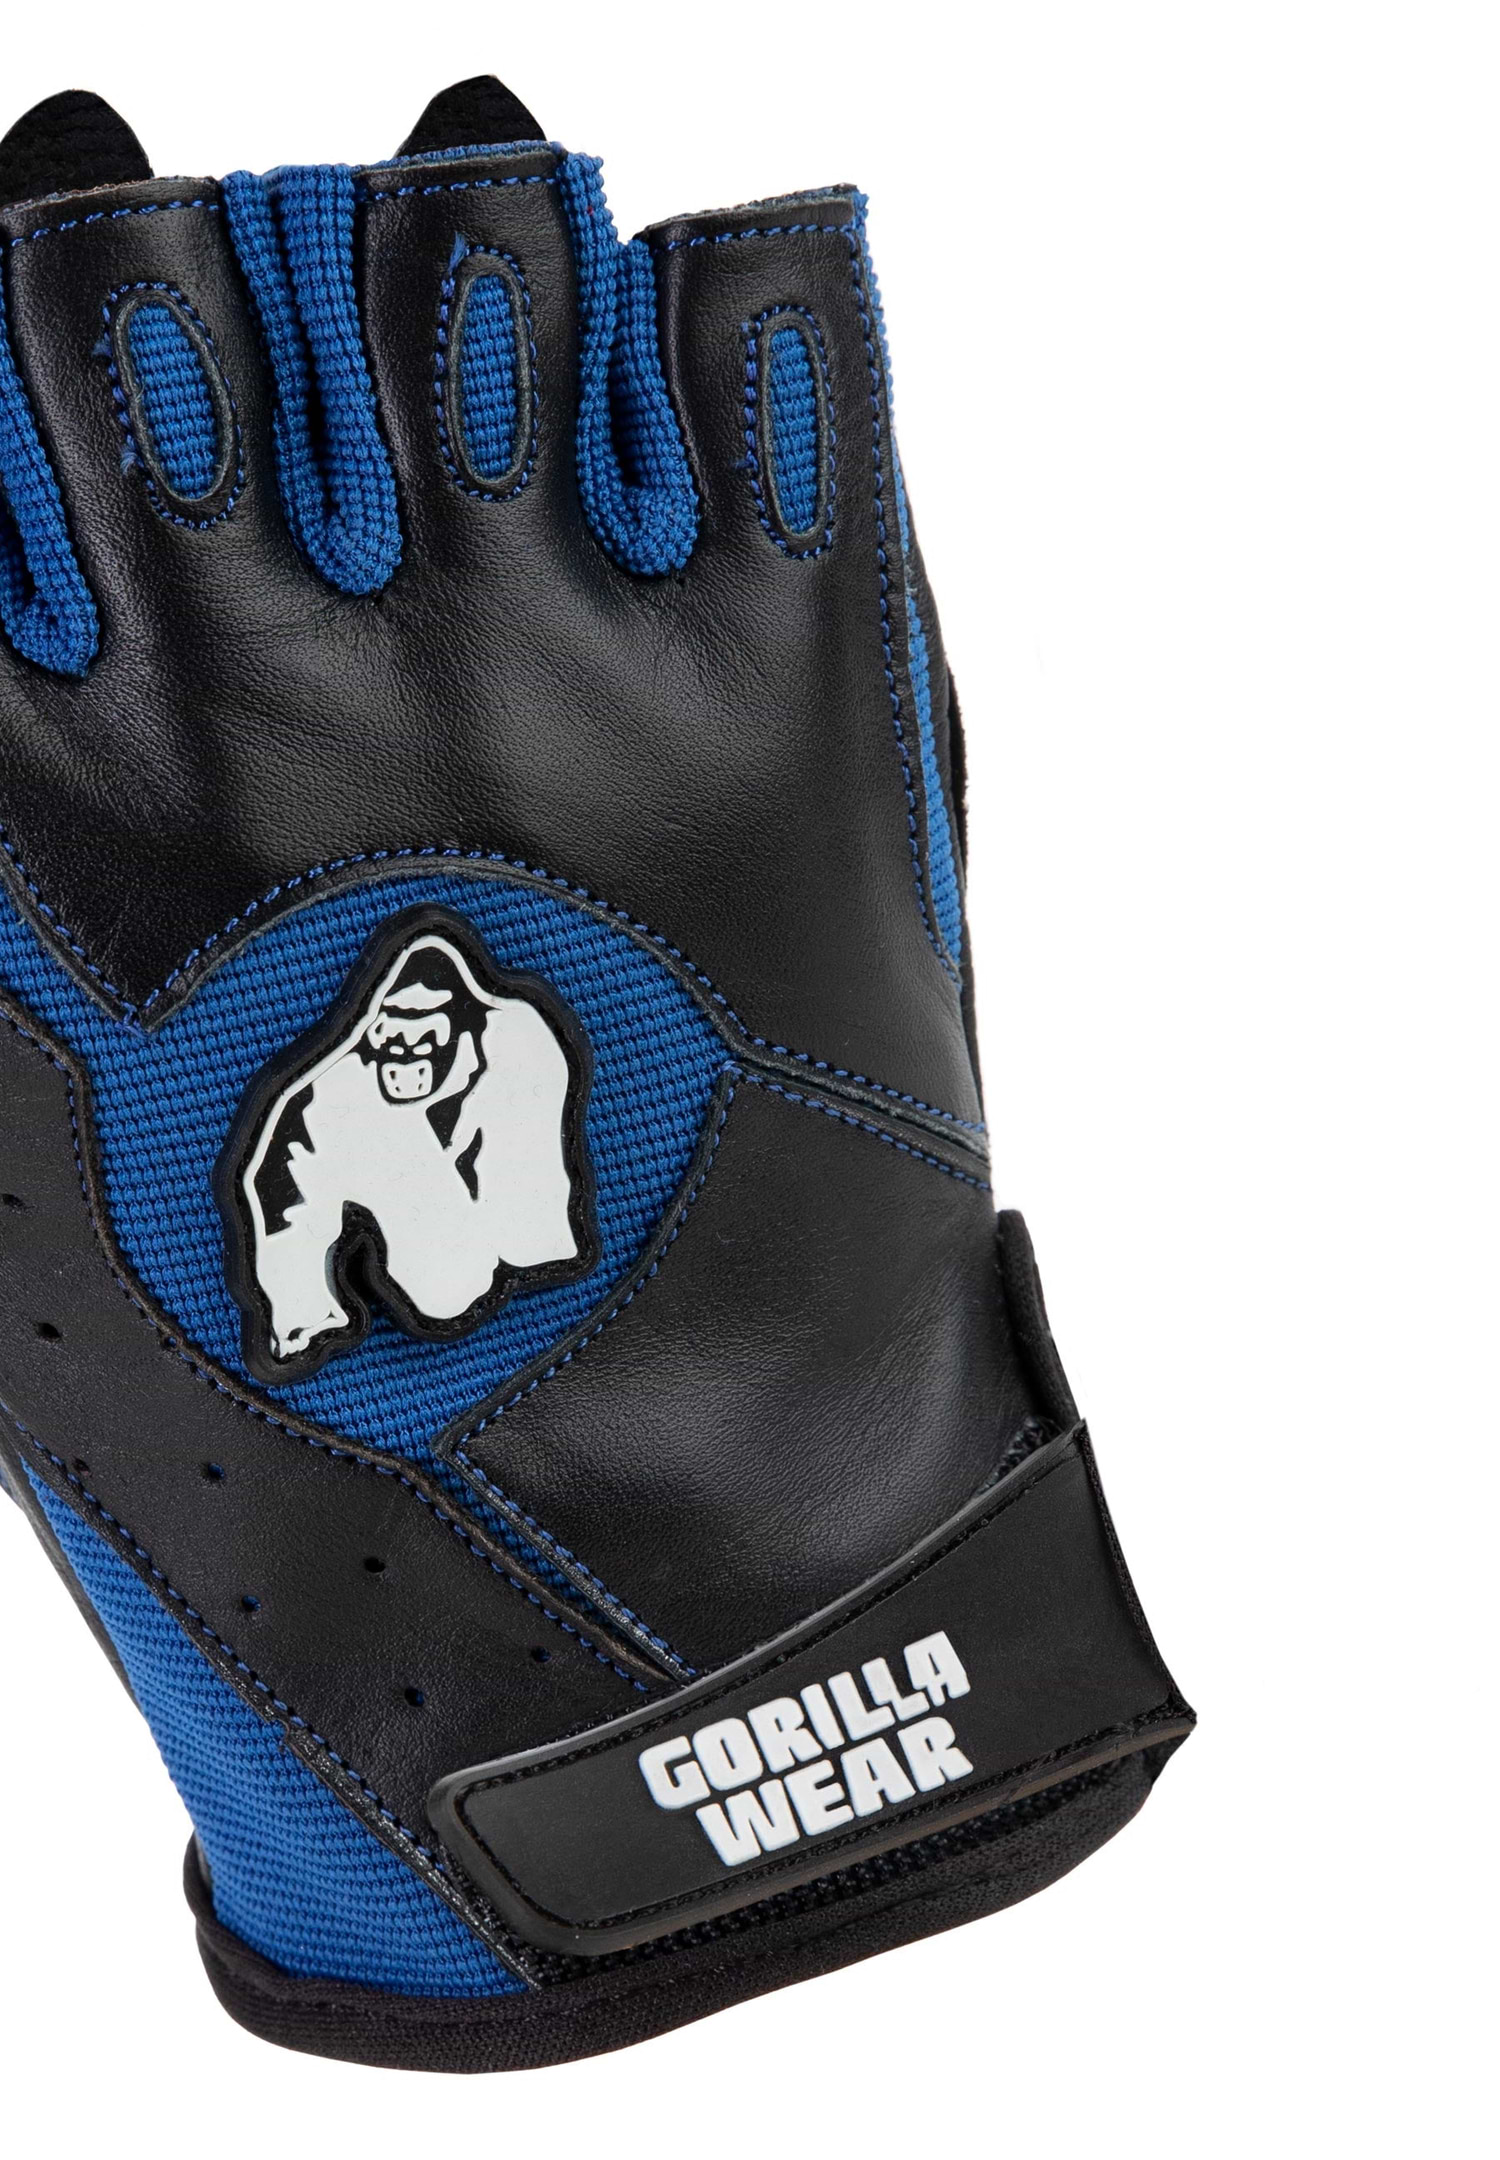 Dallas Wrist Wraps Gloves - Black/Red - XL Gorilla Wear